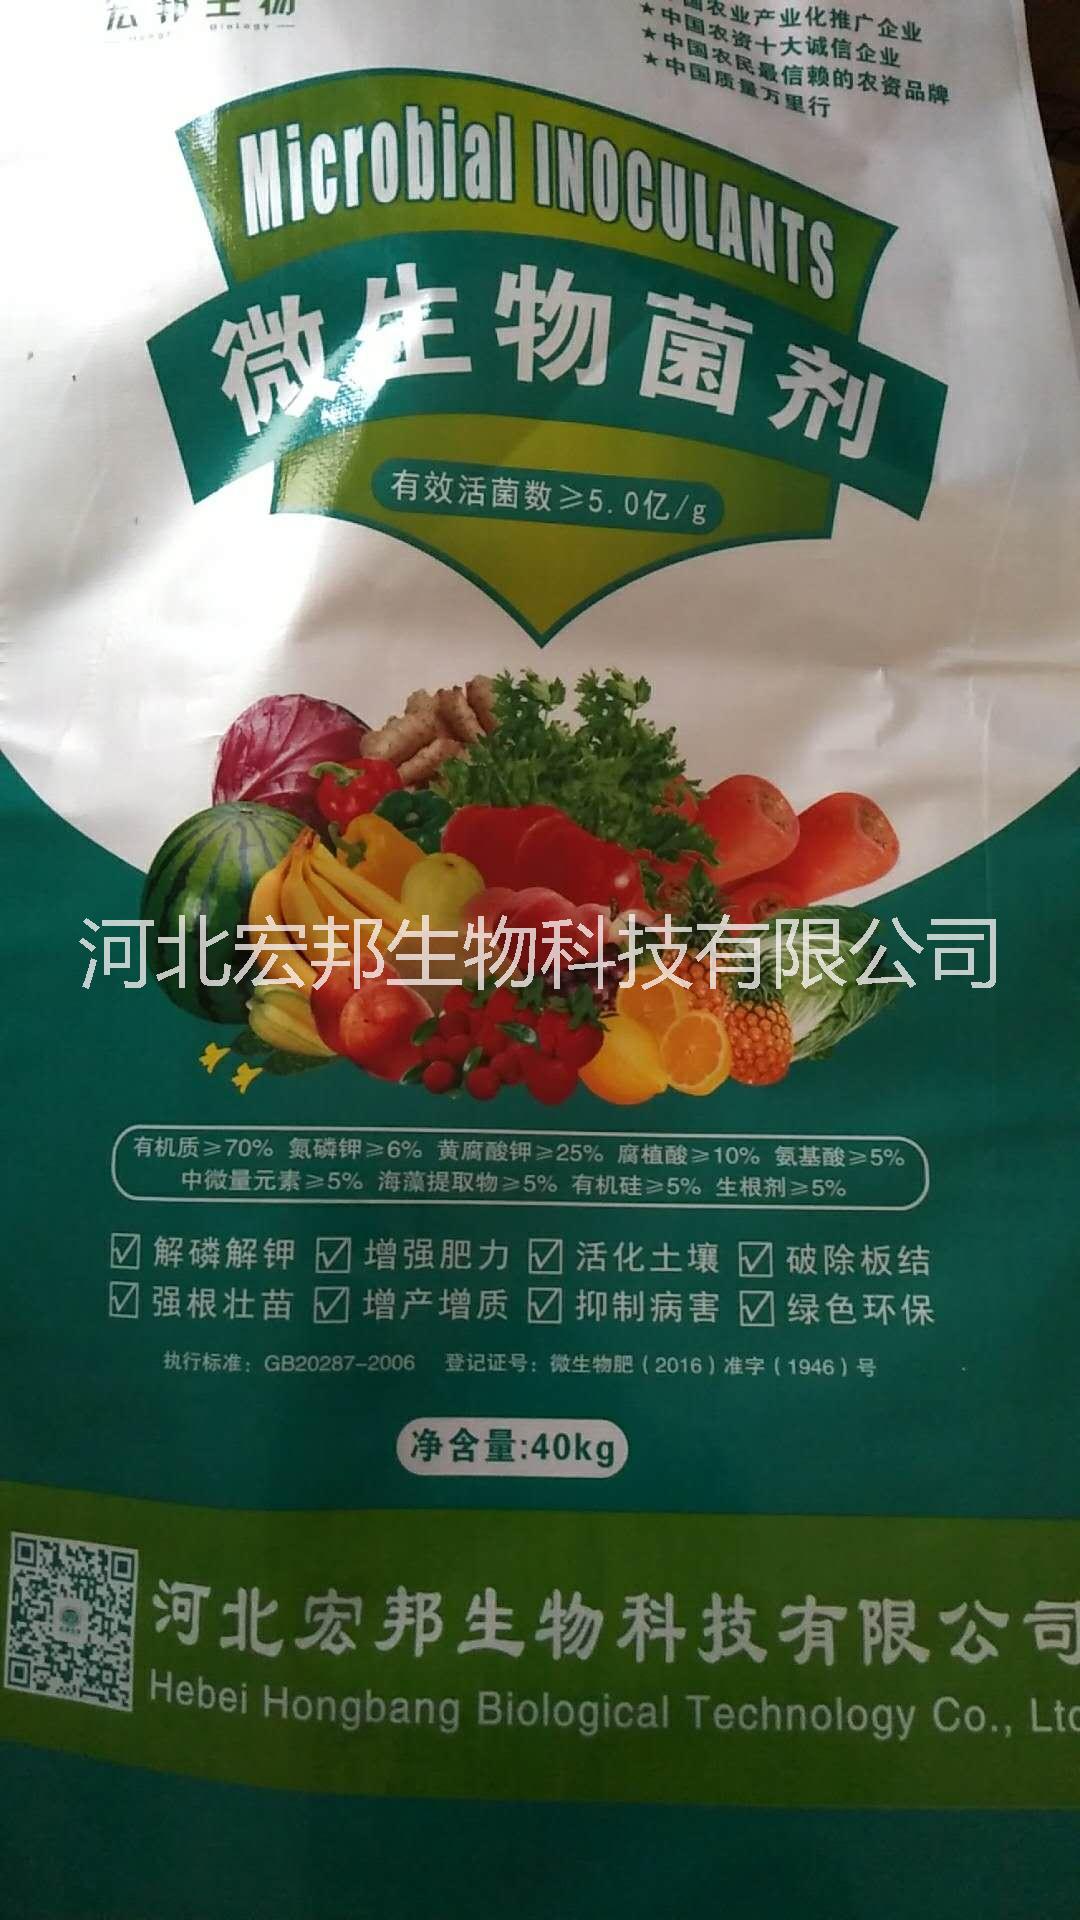 邯郸市黄腐酸钾微生物菌剂 瓜果蔬菜肥厂家